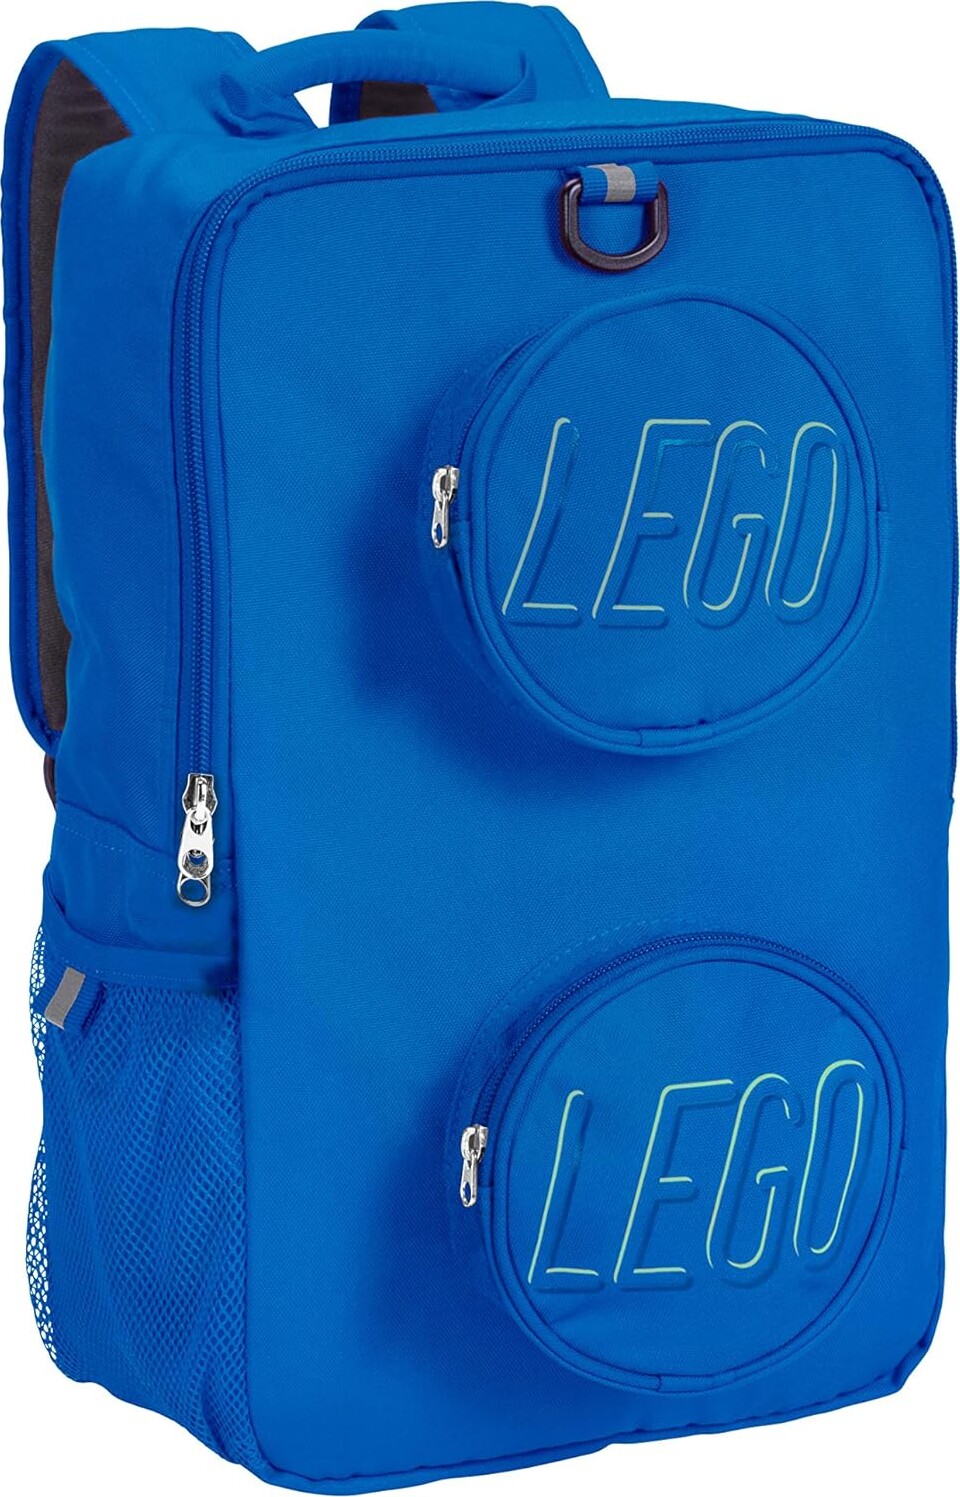 Lego - Brick Backpack (15 L) - Blue (4011090-bp0960-600bi)